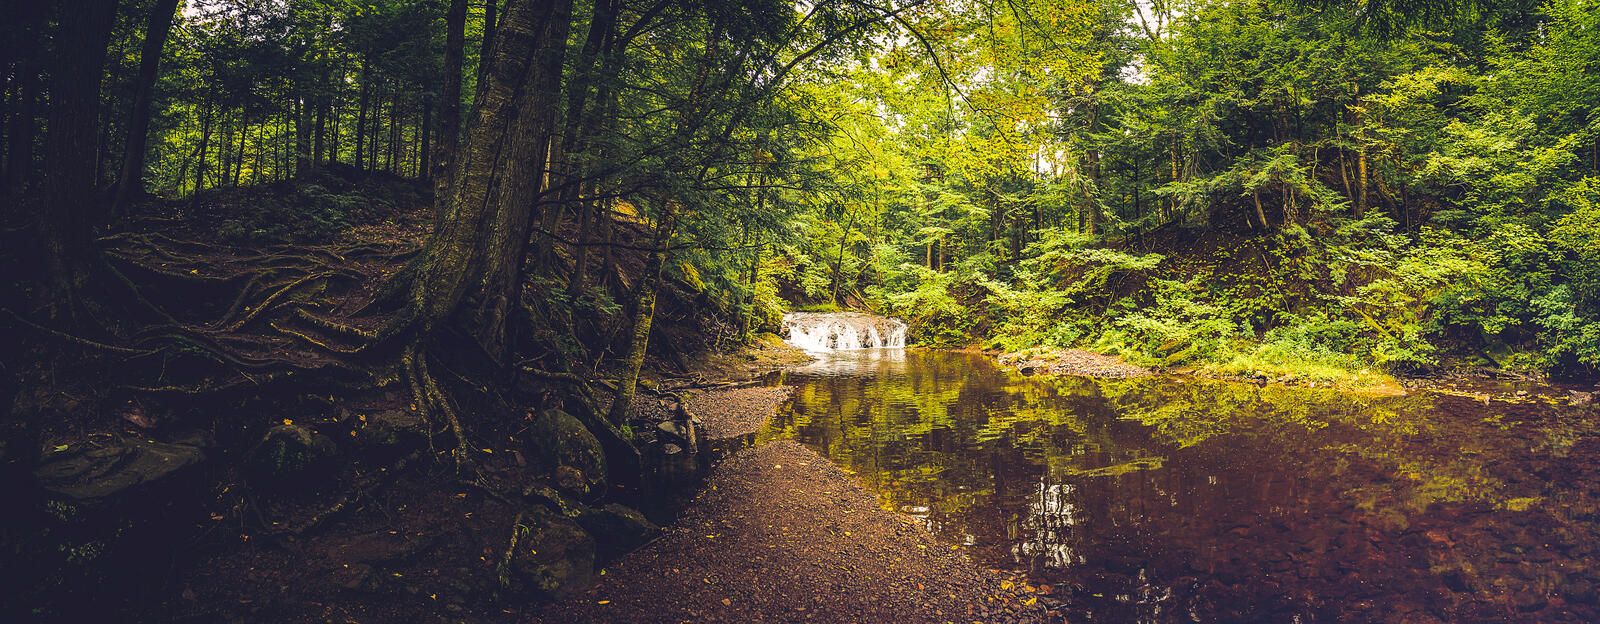 Бесплатное фото Небольшой водопад в лесу